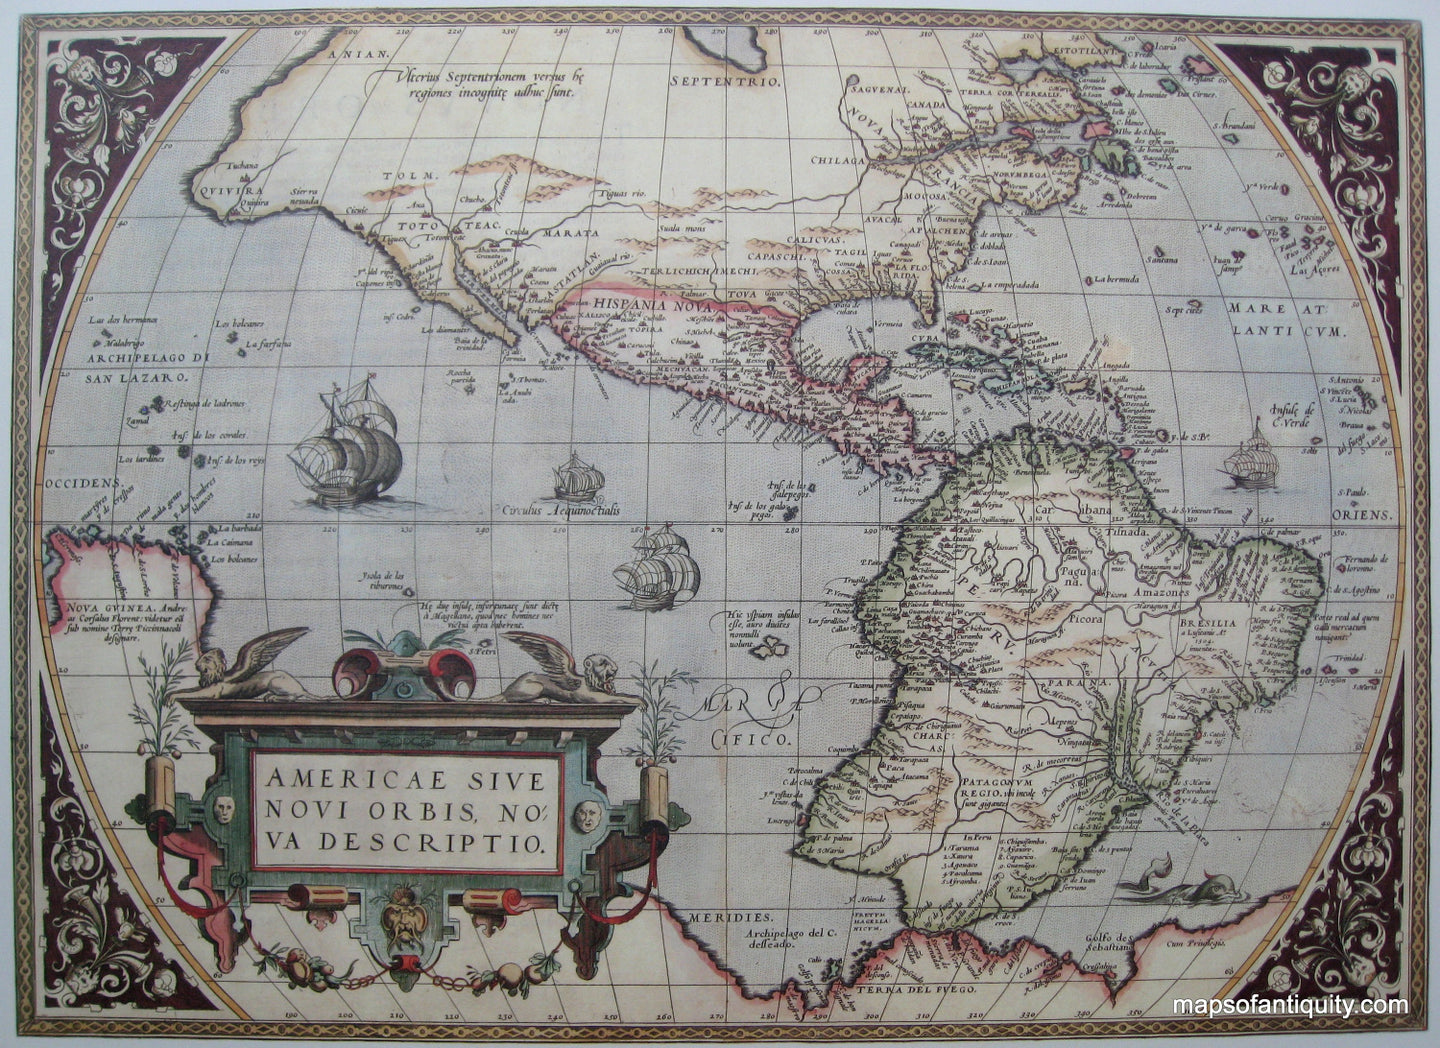 Reproduction-Americae-Sive-Novi-Orbis-Nova-Descriptio---Reproduction---Reproduction-North-America-c.-1572-Ortelius-Maps-Of-Antiquity